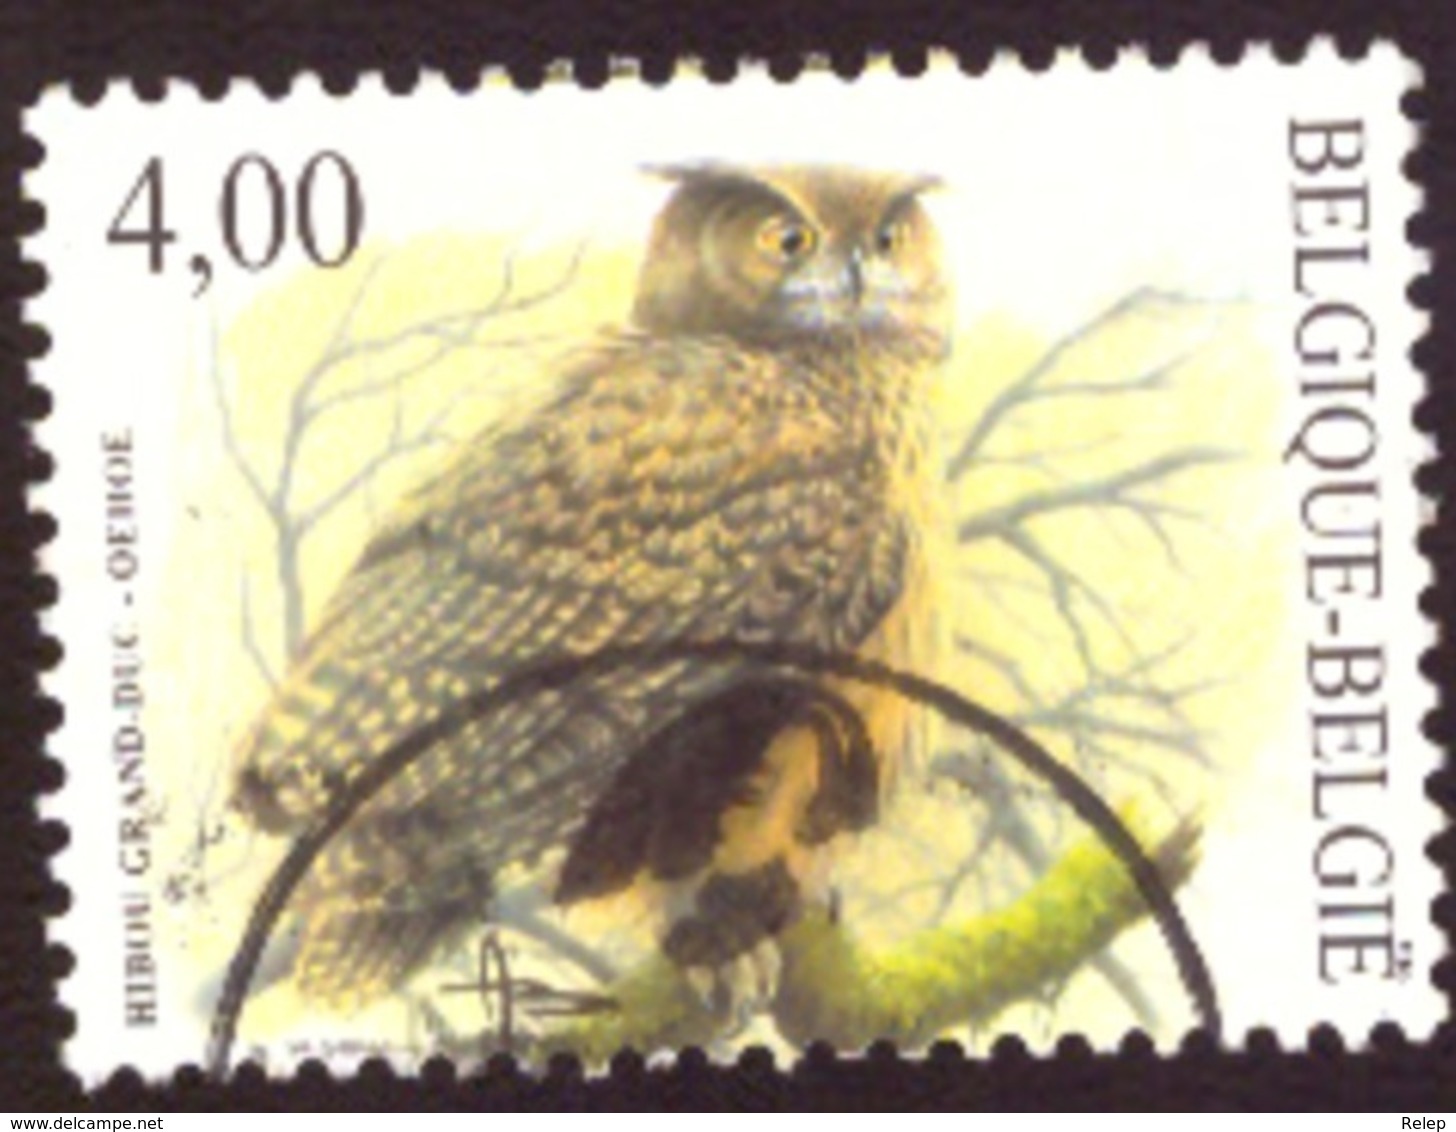 Belgique -2004 Oiseaux /Birds  €4.00 Très Bon état. A. Buzin - Oblitérés